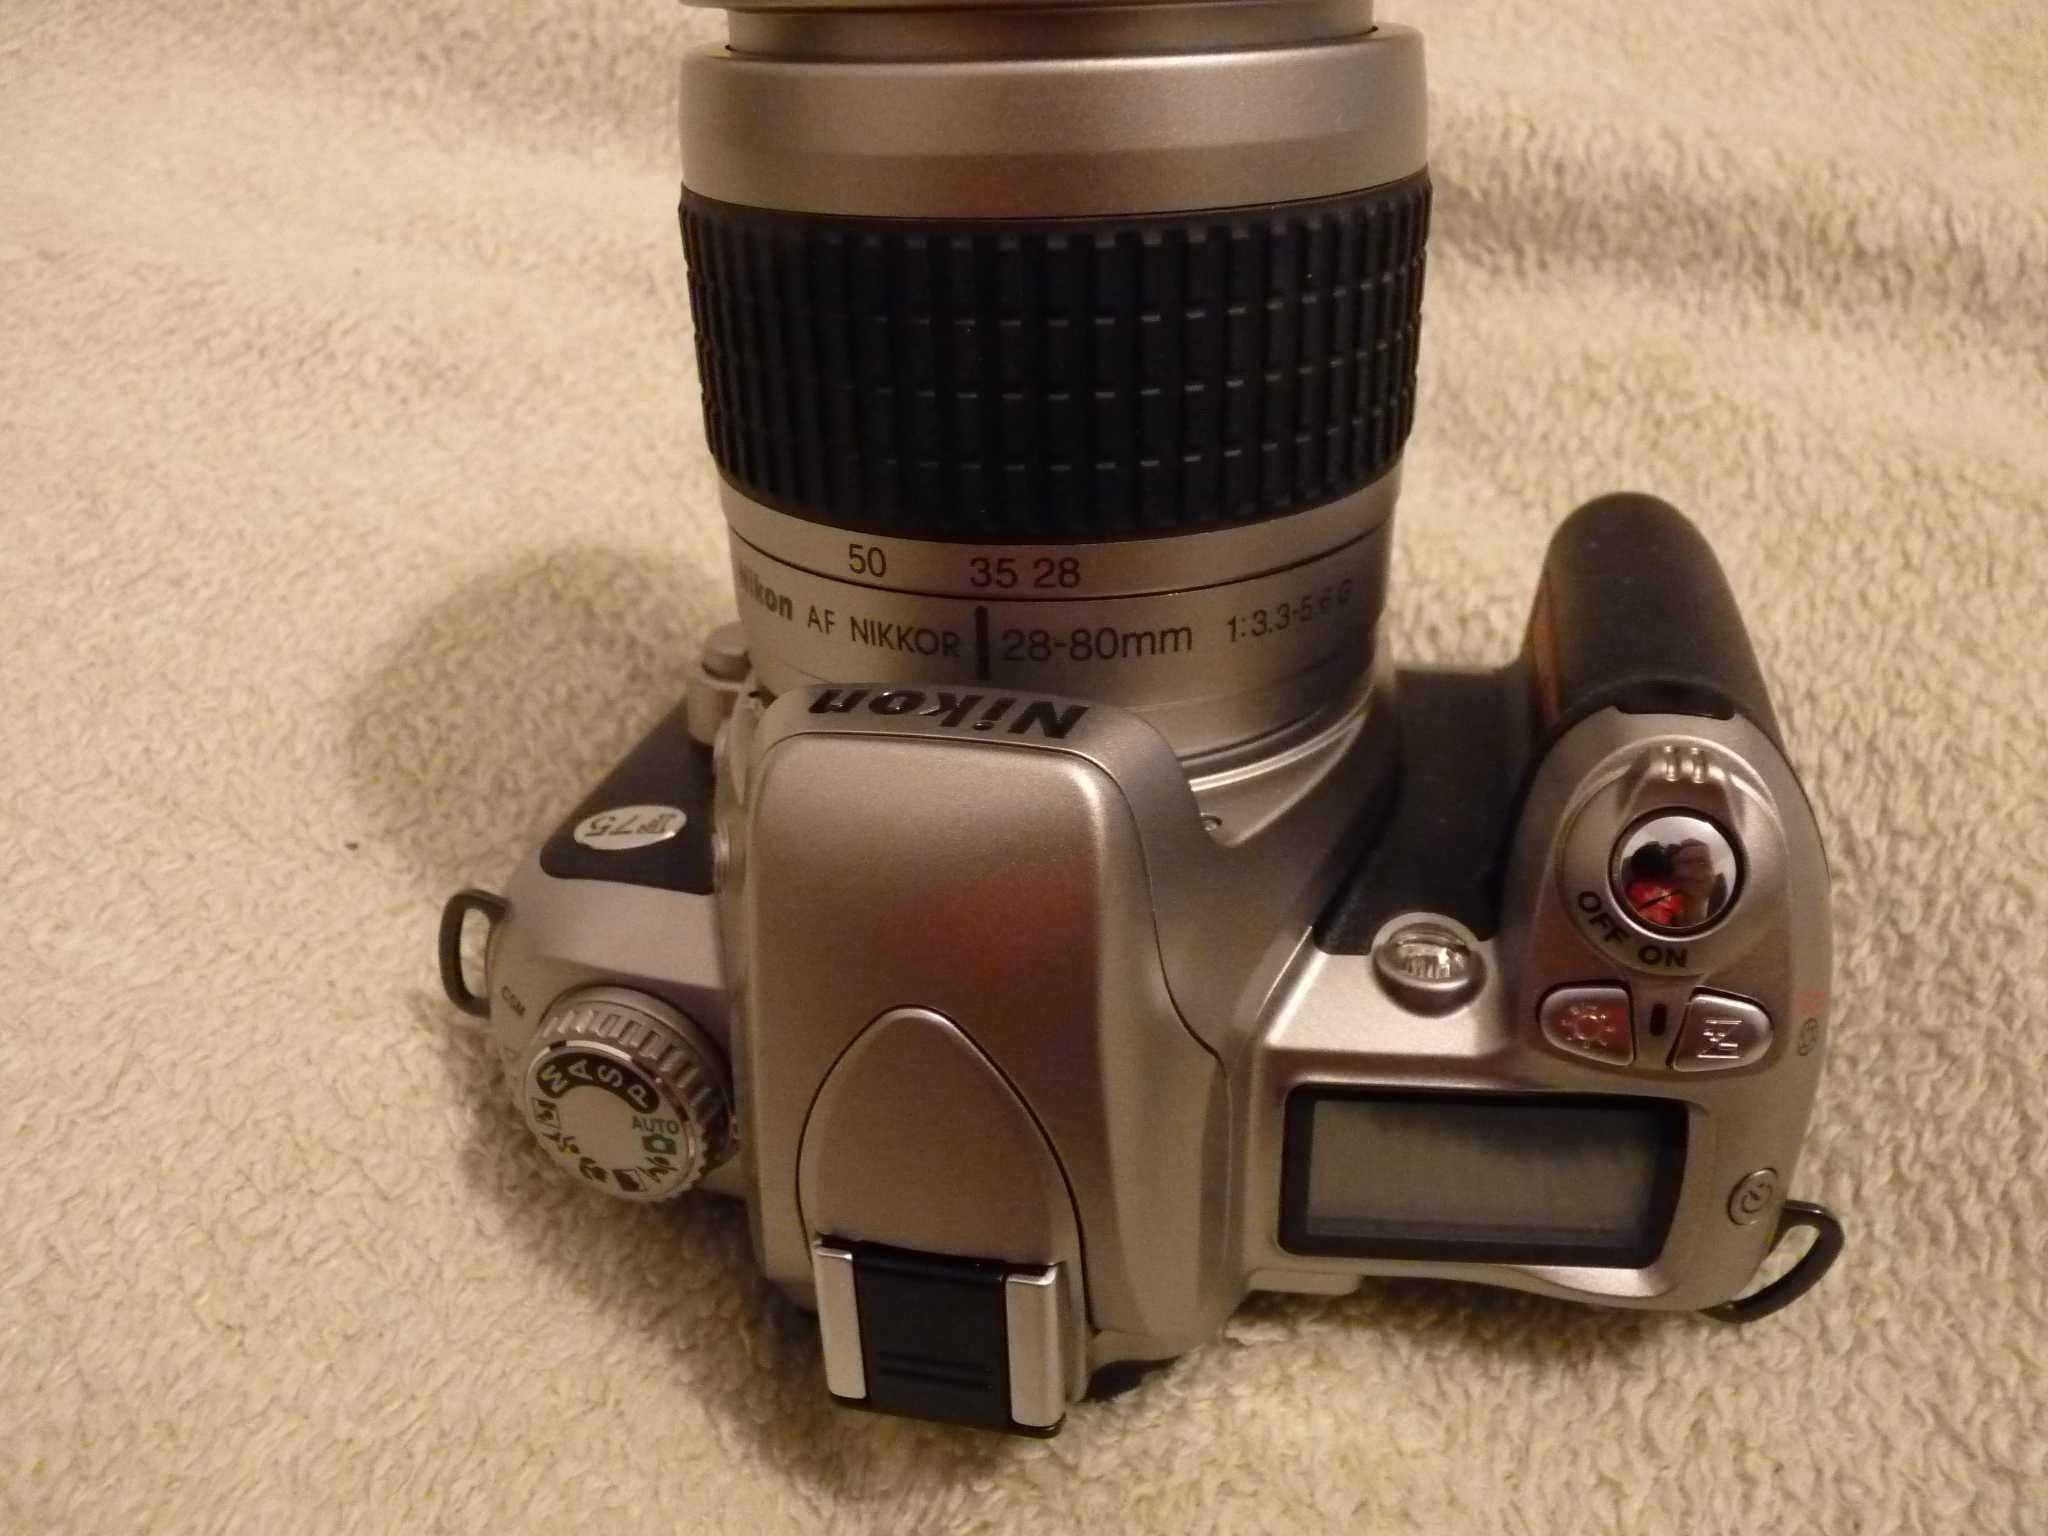 Analogowa lustrzanka Nikon F 75 w stanie jak nowa. Niespotykana okazja